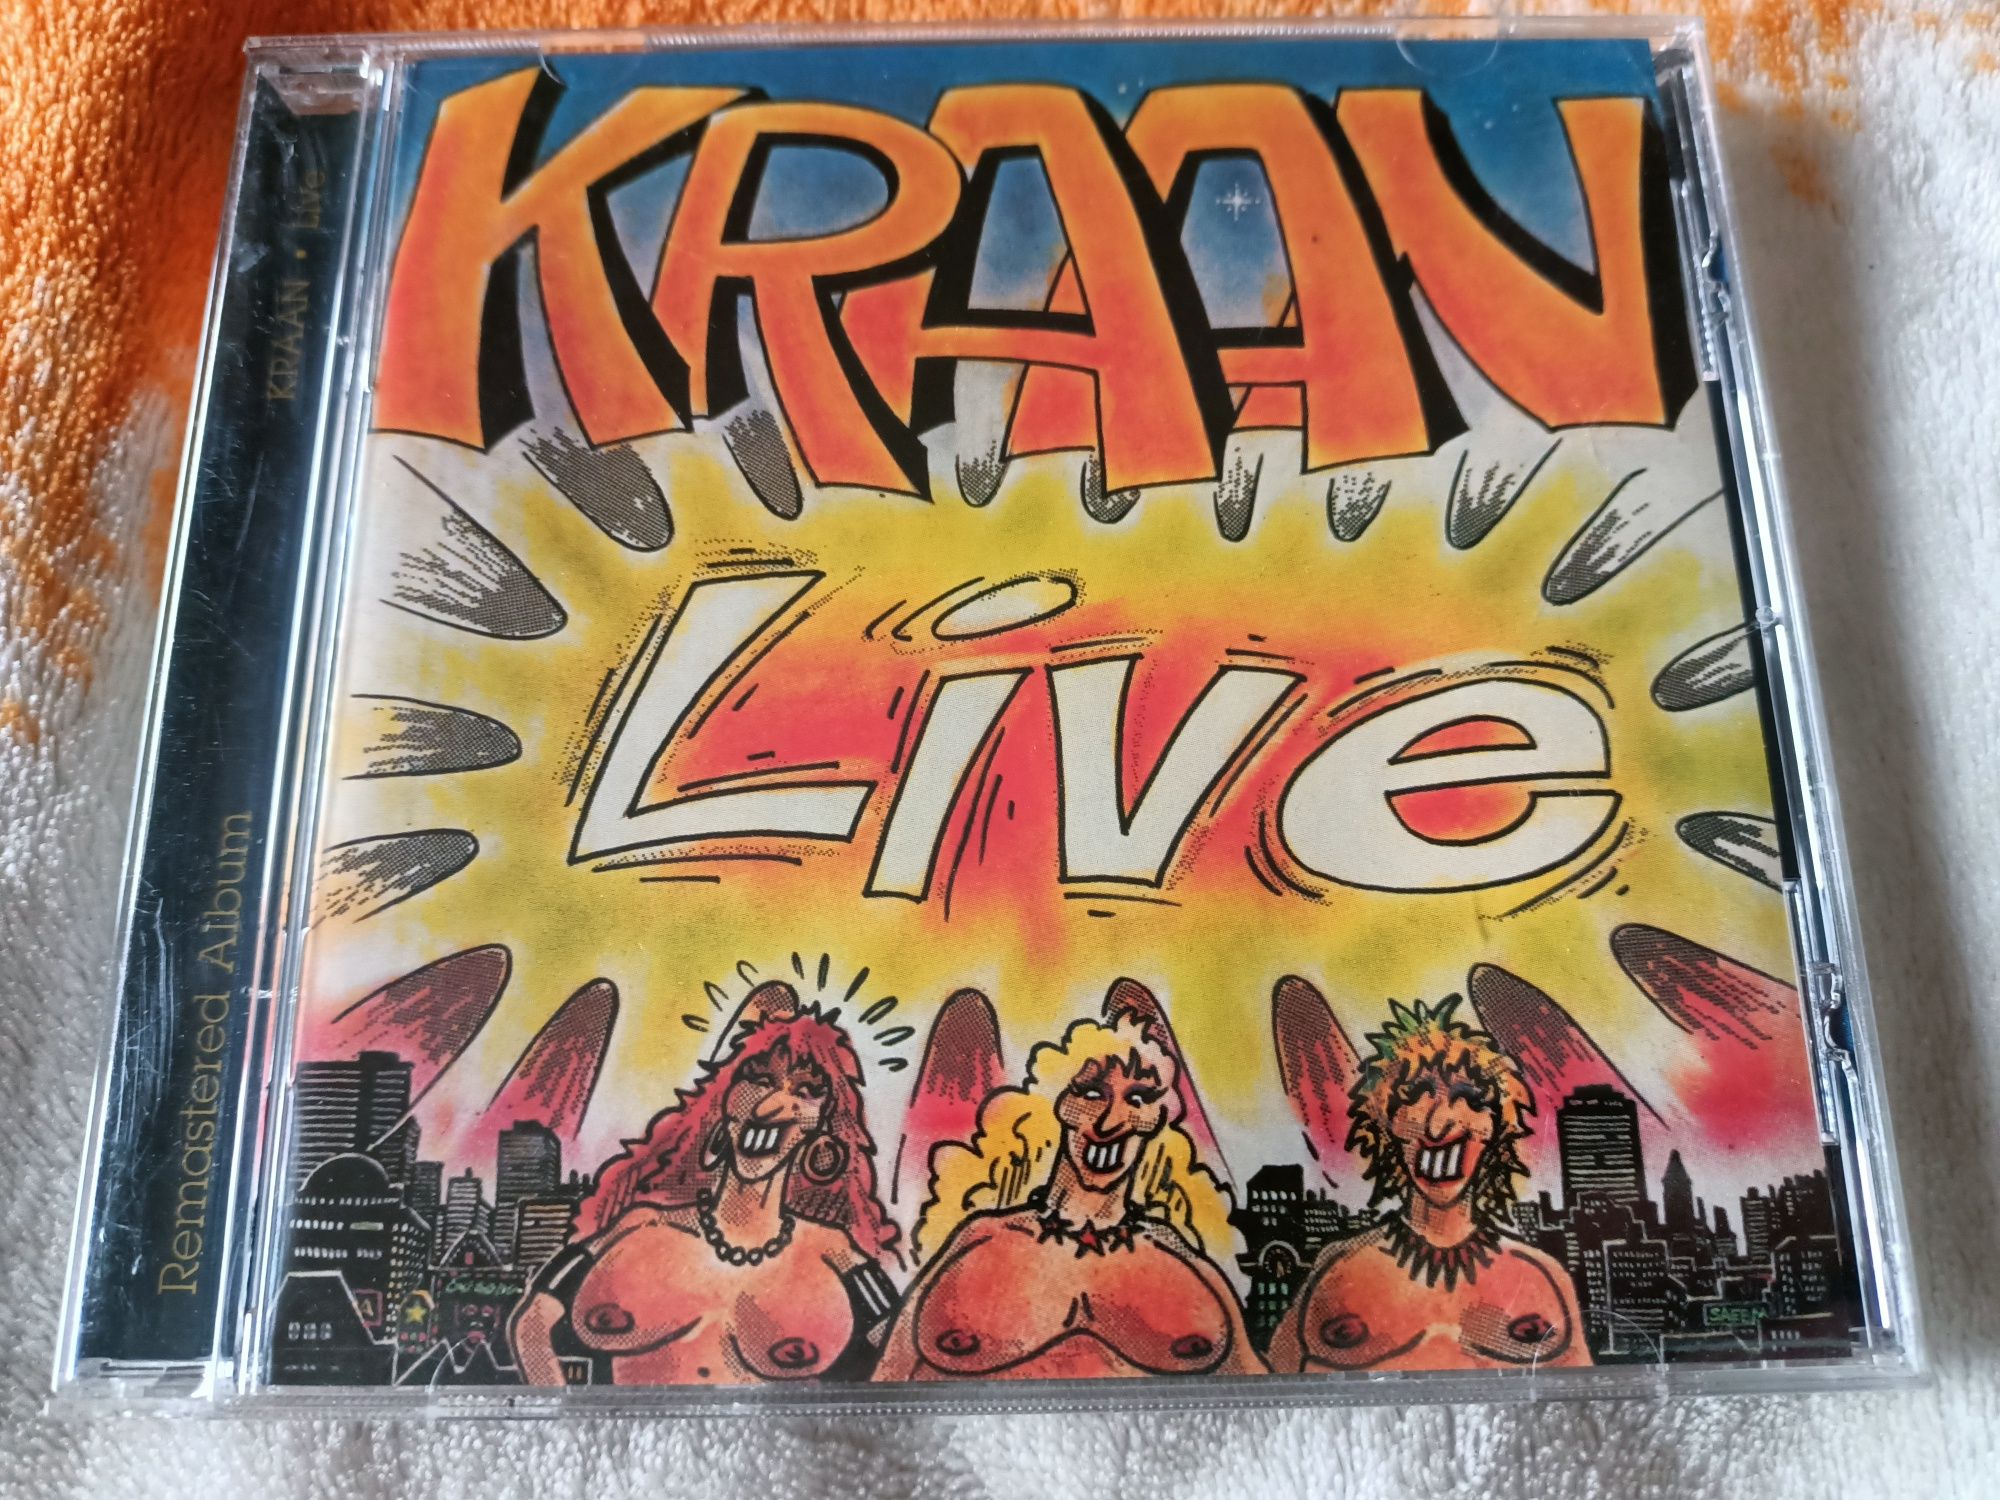 Kraan - Live (Krautrock, Jazz-Rock, Prog Rock)(nm)